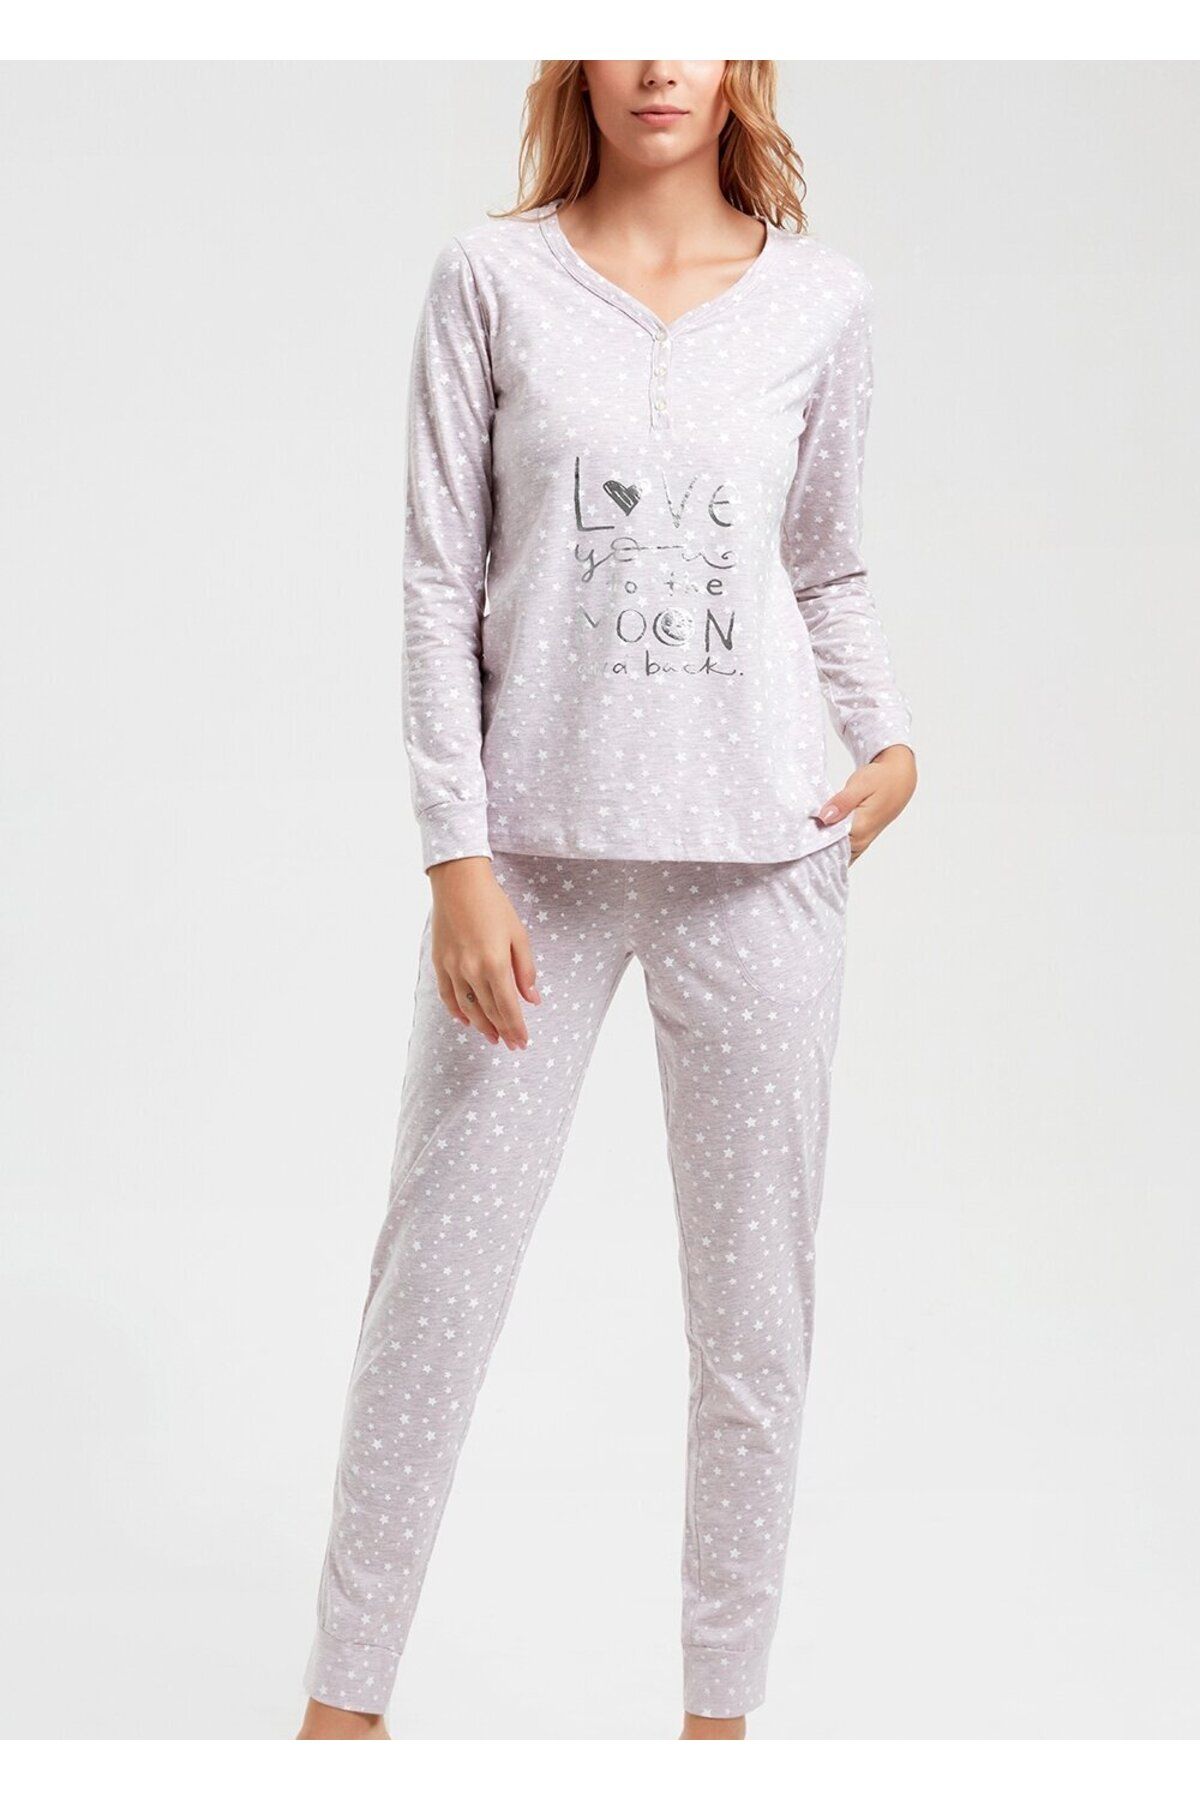 Suwen Little Star Pijama Takımı